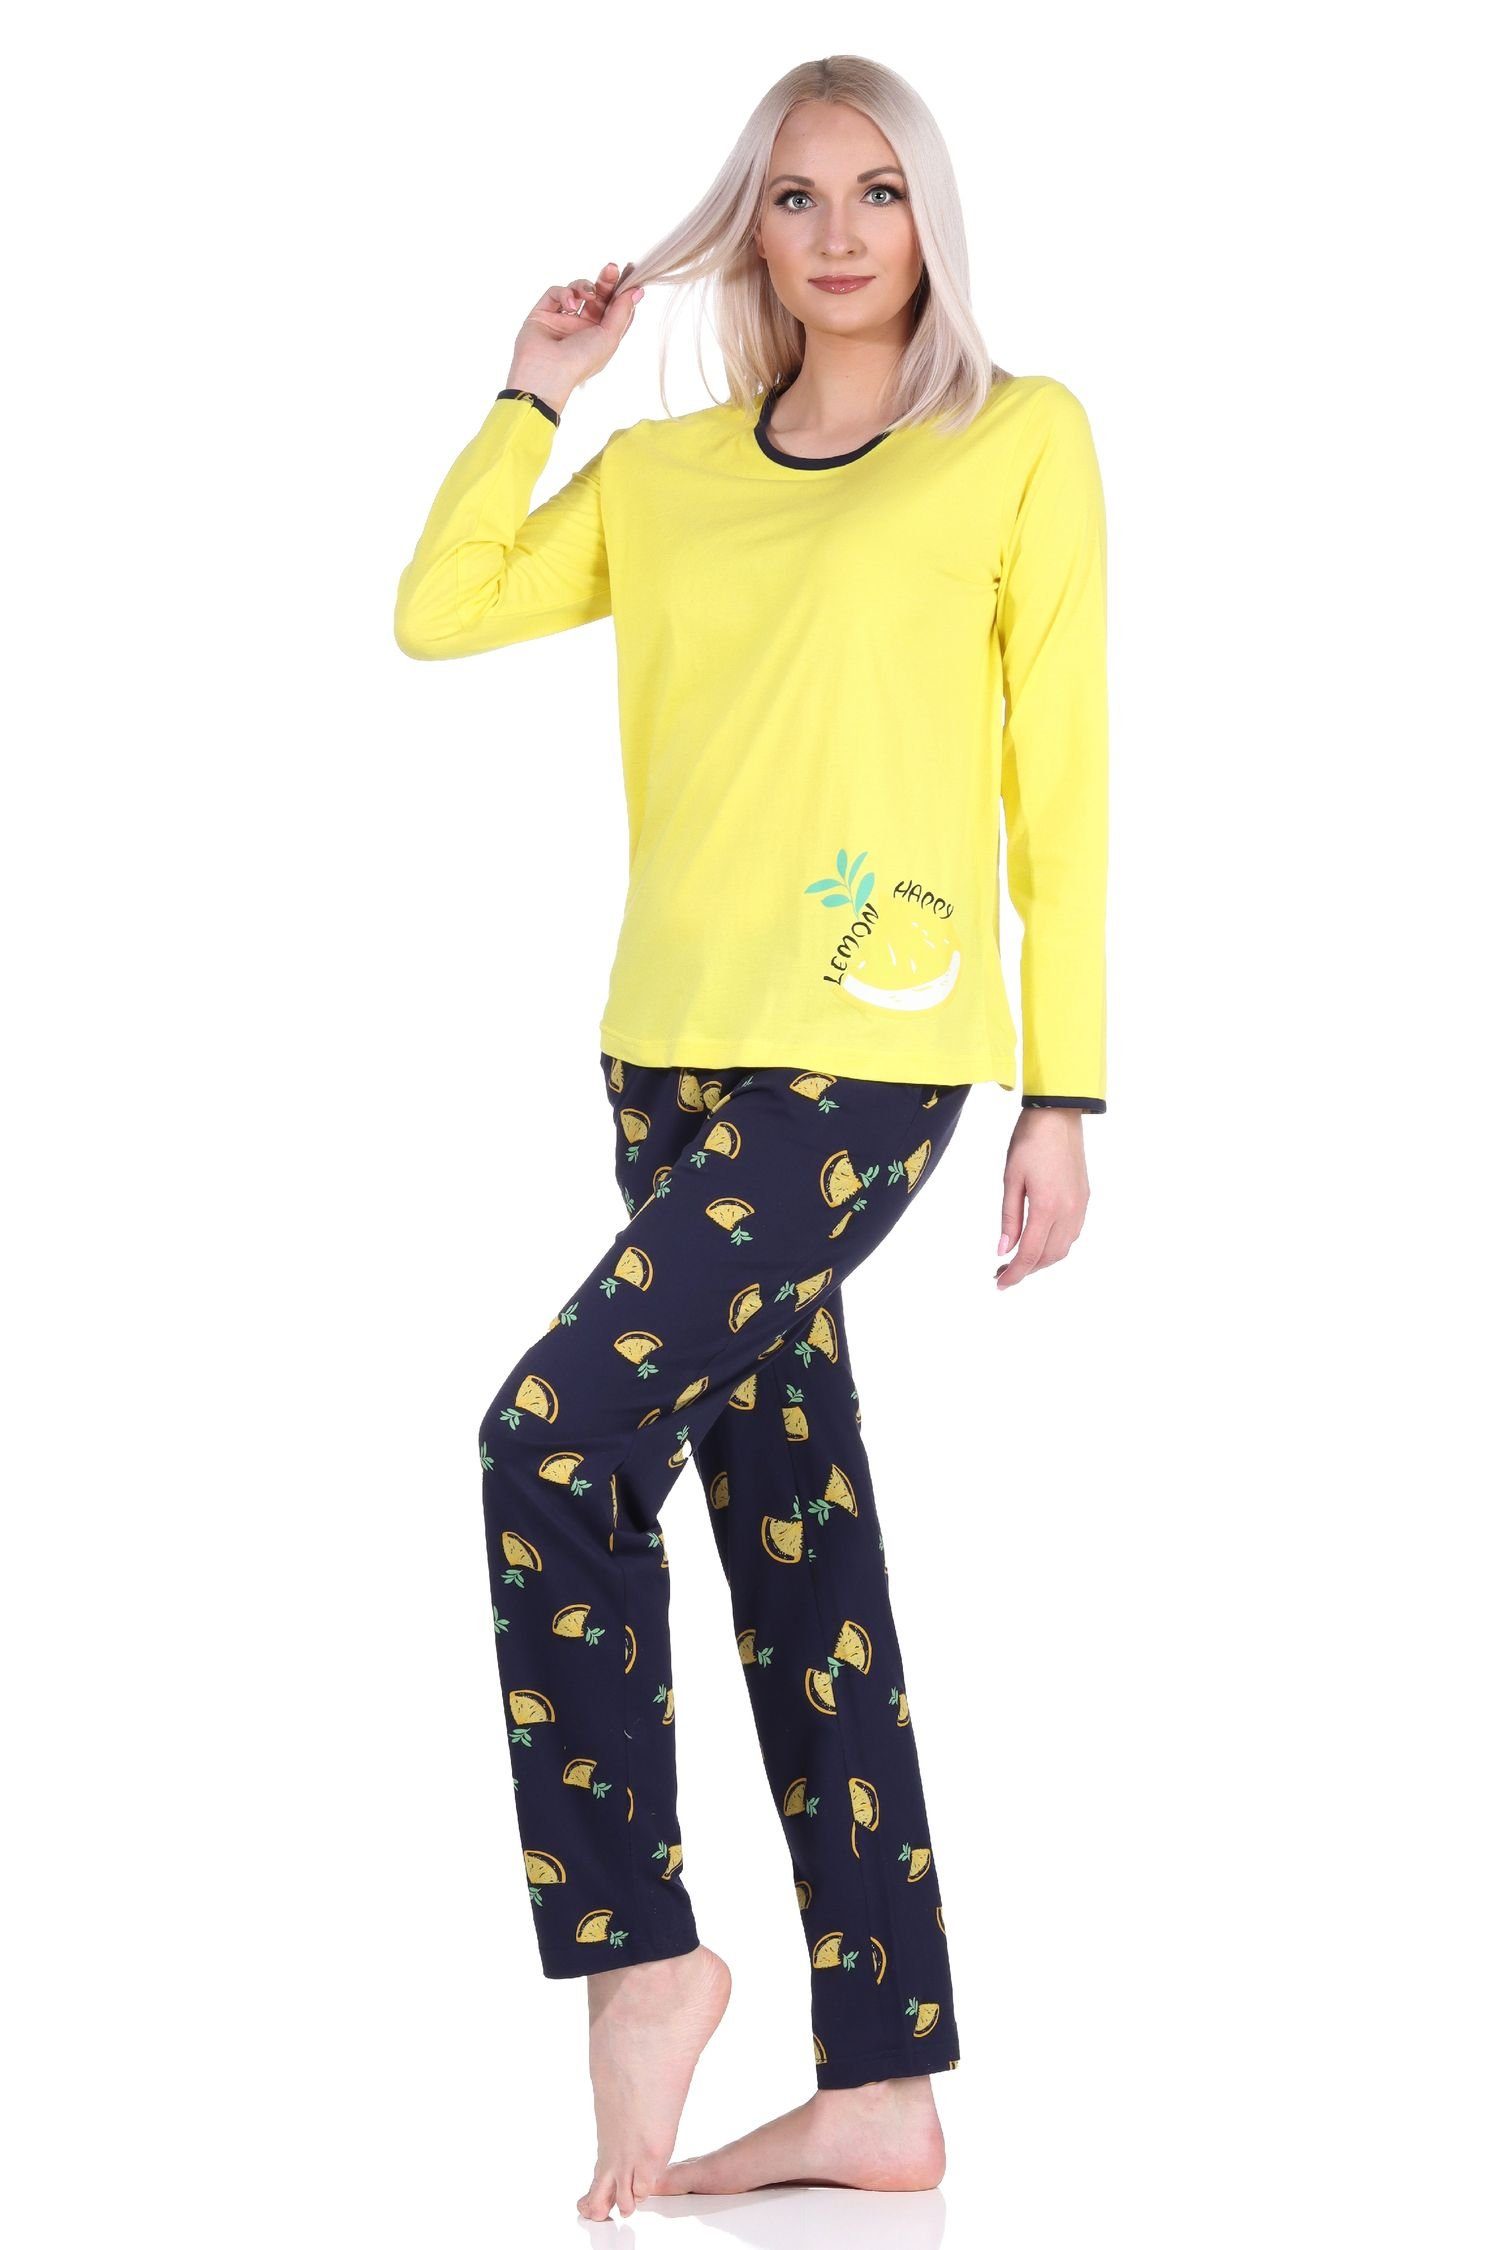 Normann Pyjama Süsser Damen Schlafanzug langarm Pyjama mit Zitronen als Motiv gelb